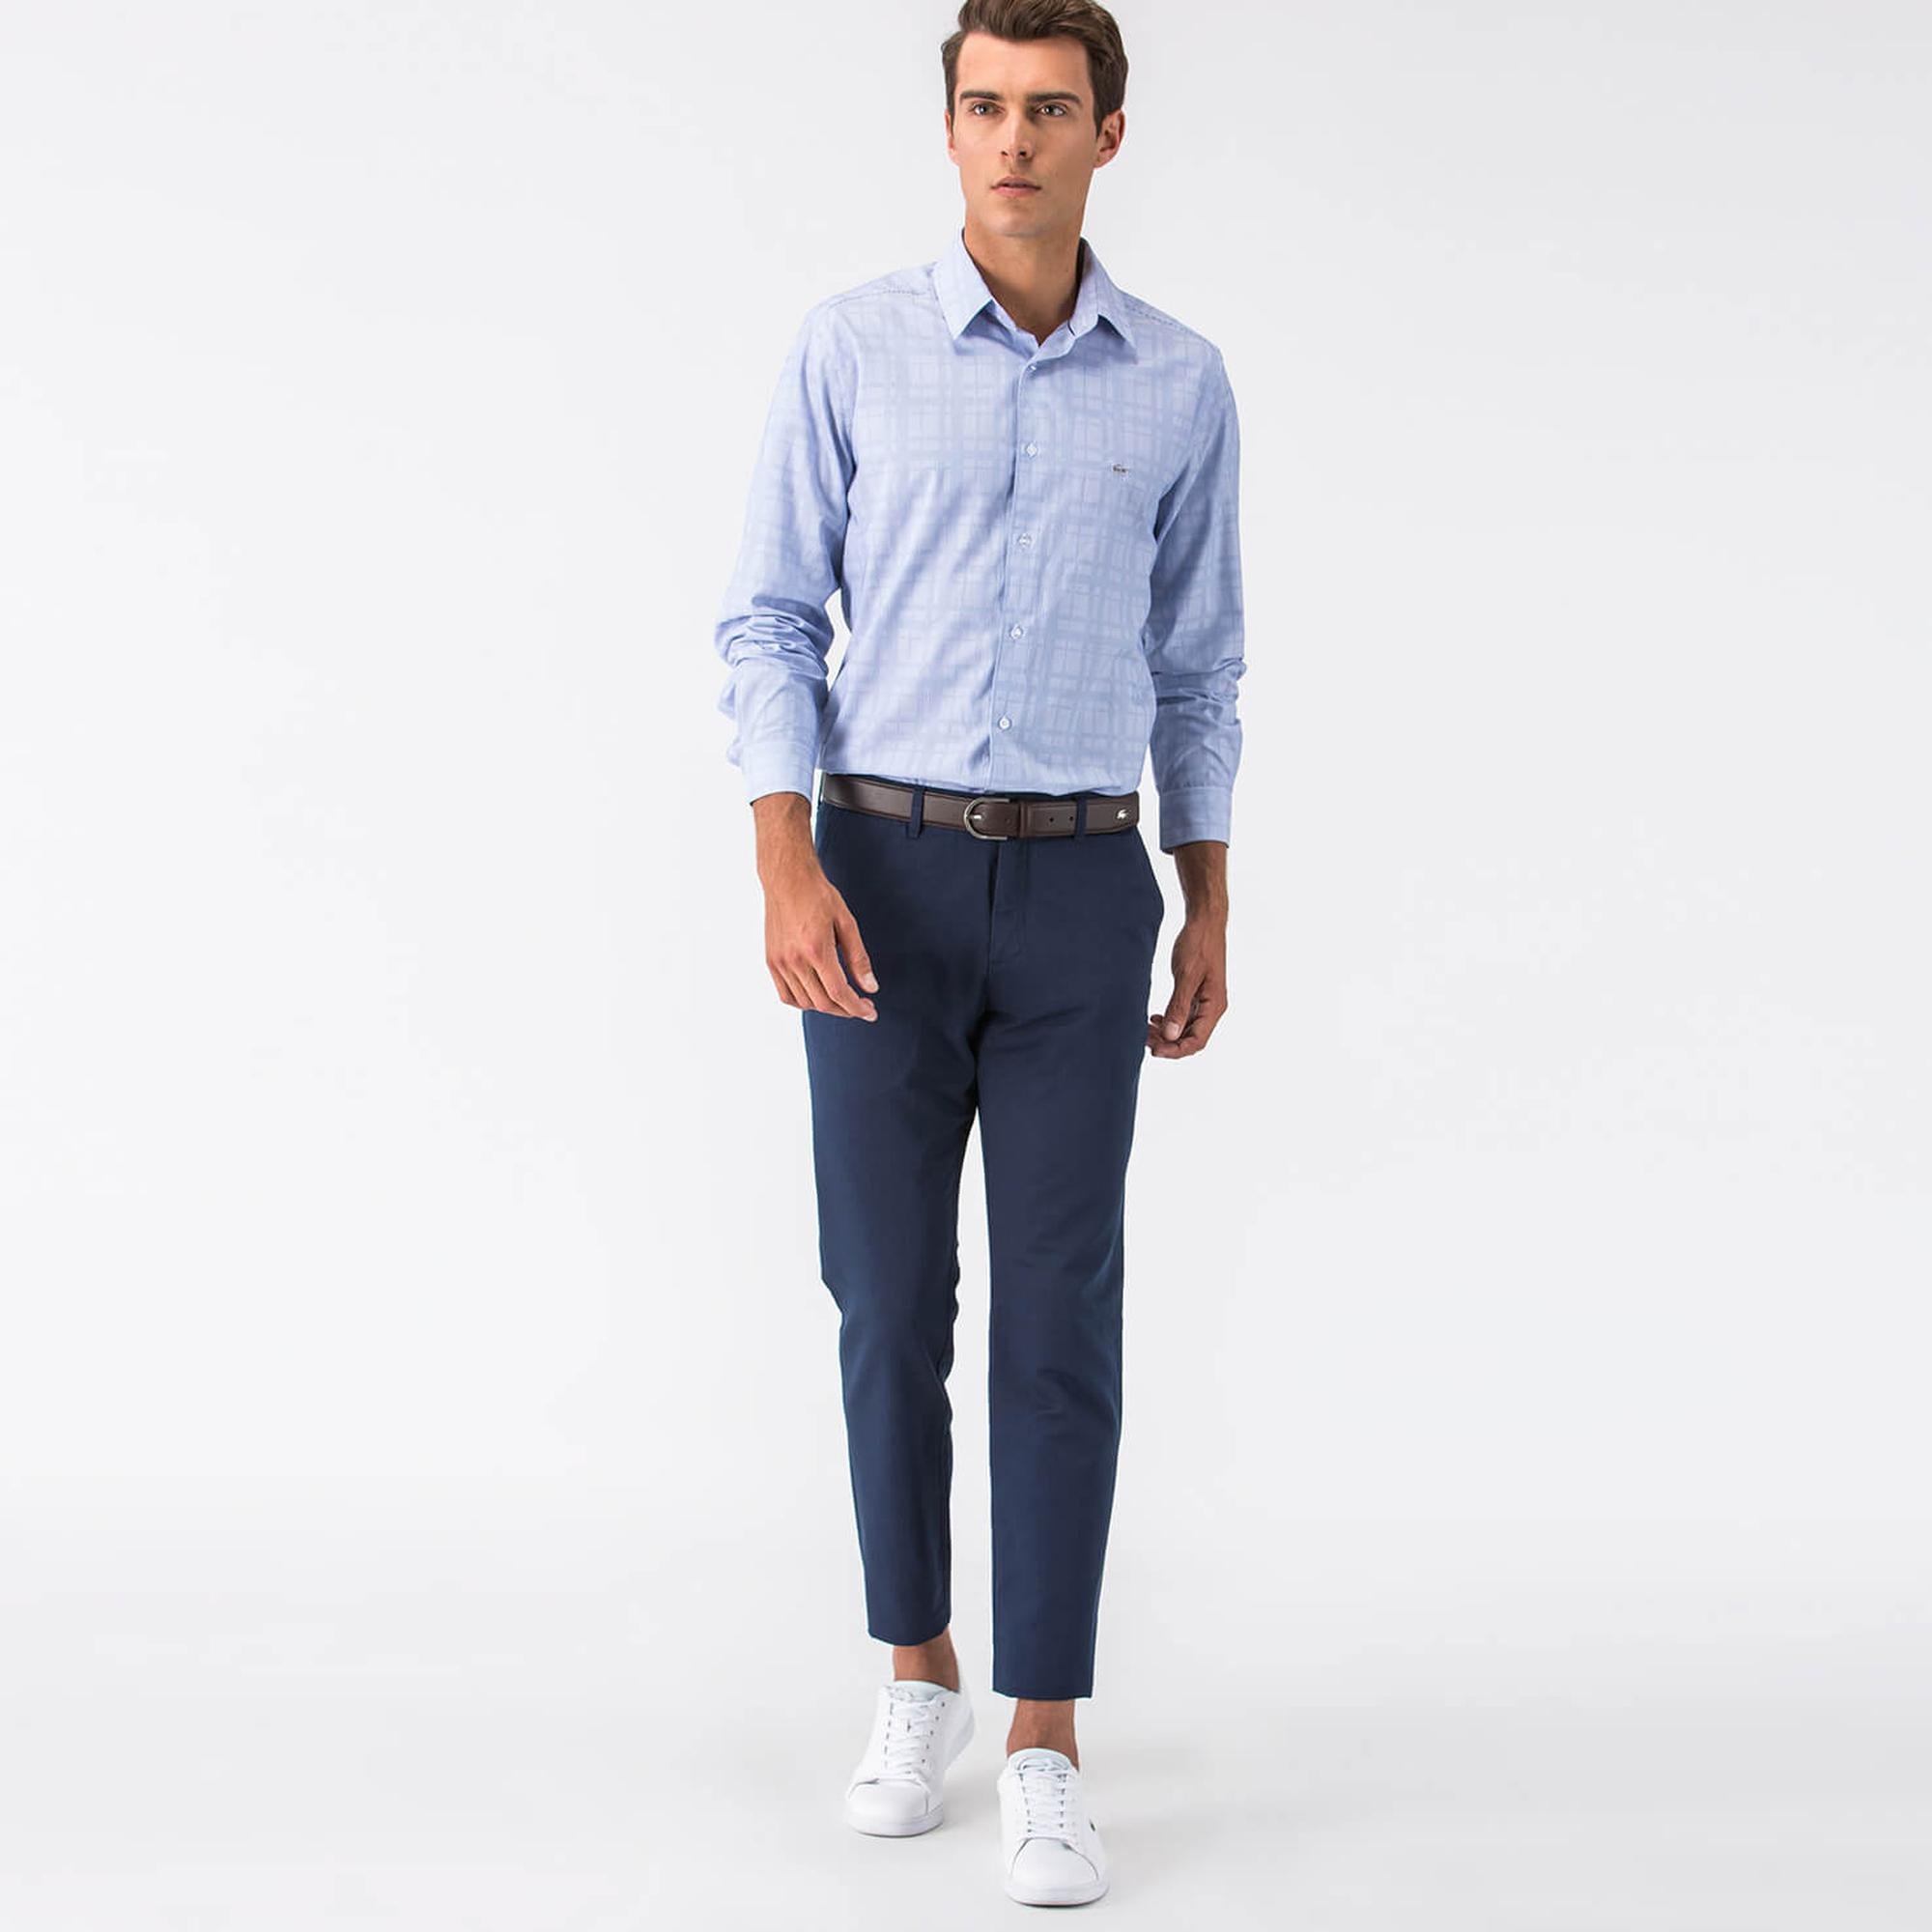 Lacoste Men's Sportswear Trousers